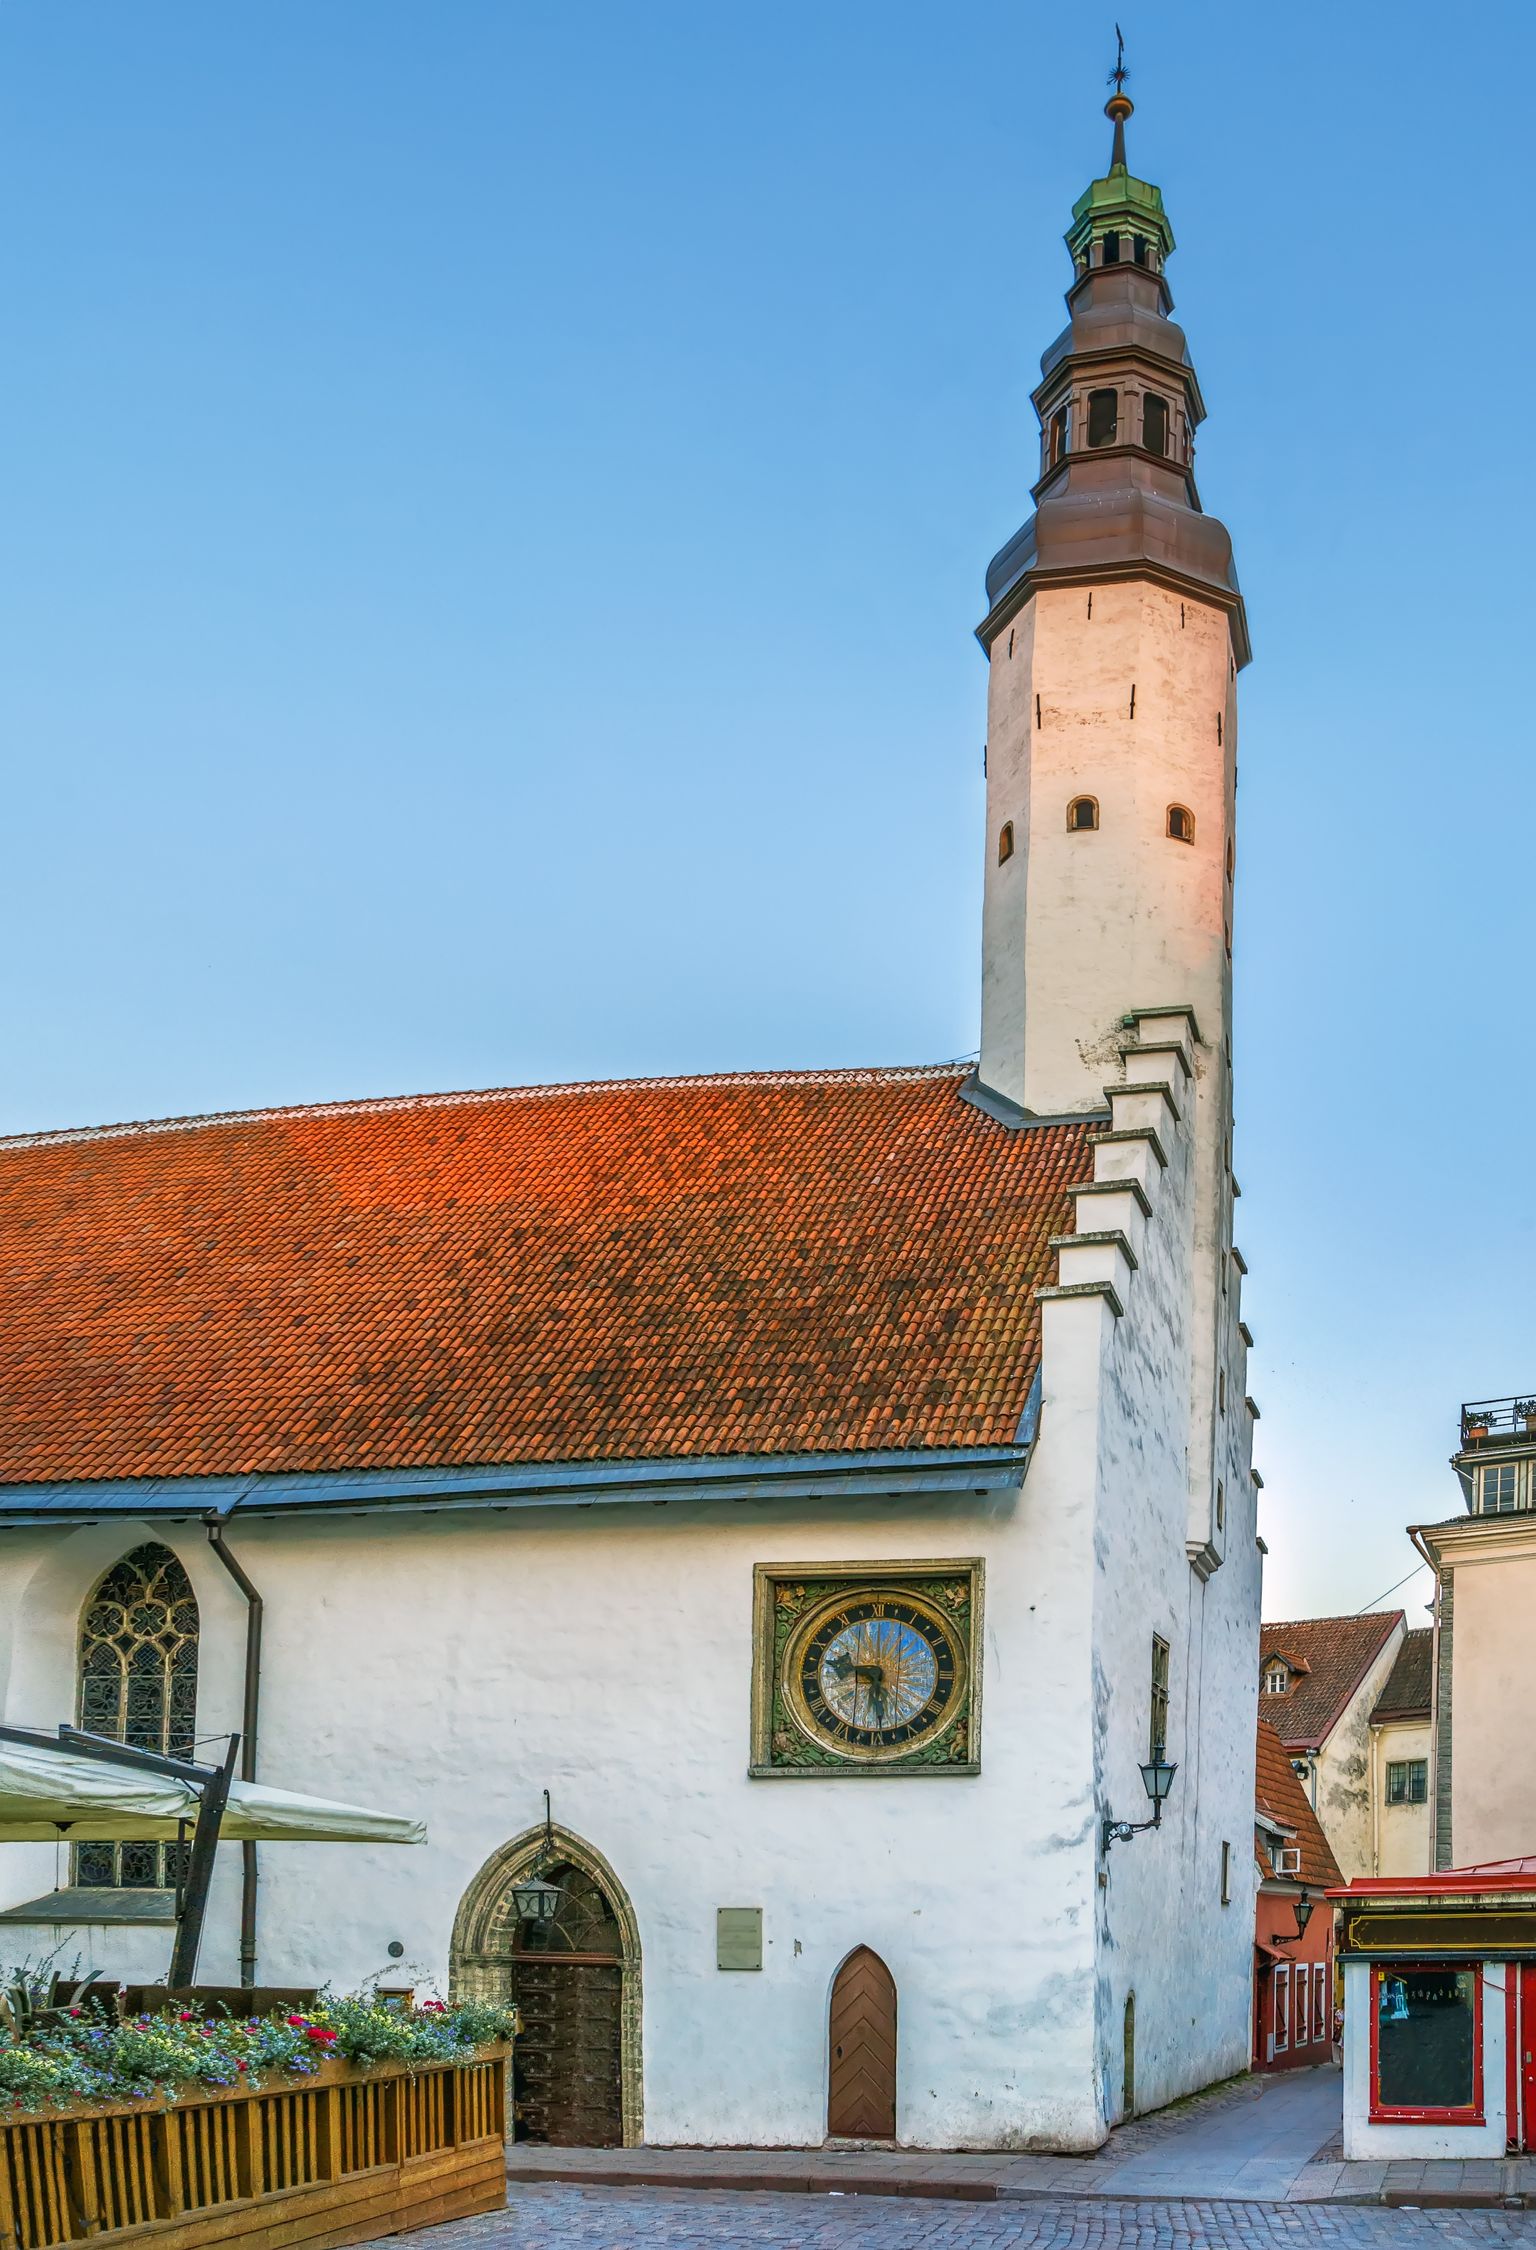 Pühavaimu kiriku seinal on barokkstiilis puunikerdustega kell, mille tegi Christian Ackermann 1684. aastal.